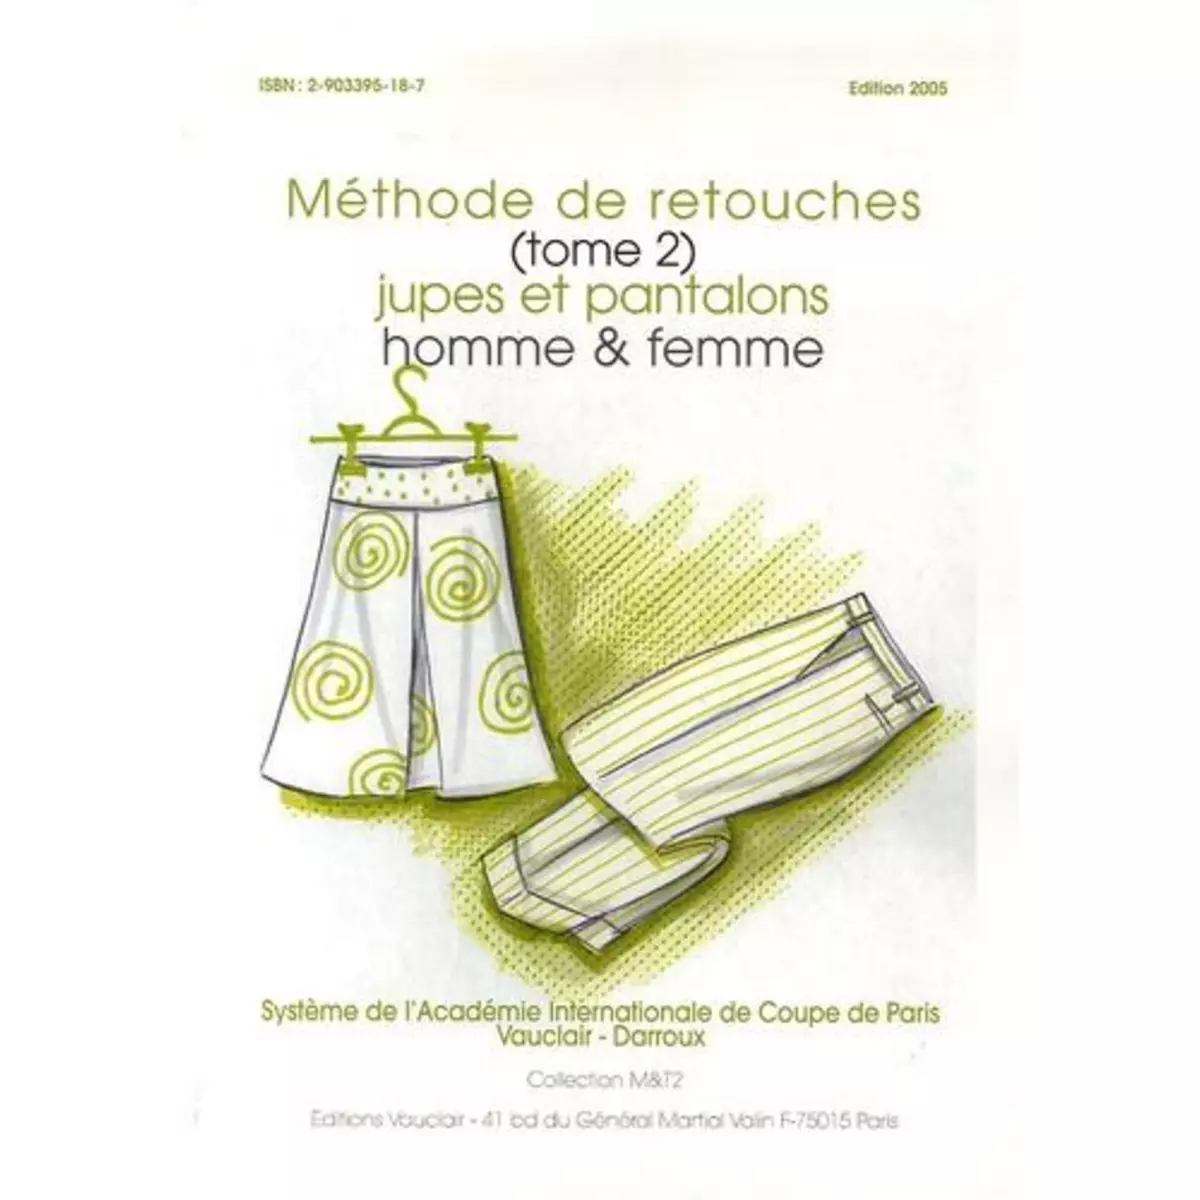  METHODE DE RETOUCHES. TOME 2, JUPES ET PANTALONS HOMME & FEMME, EDITION 2005, Vauclair J-P